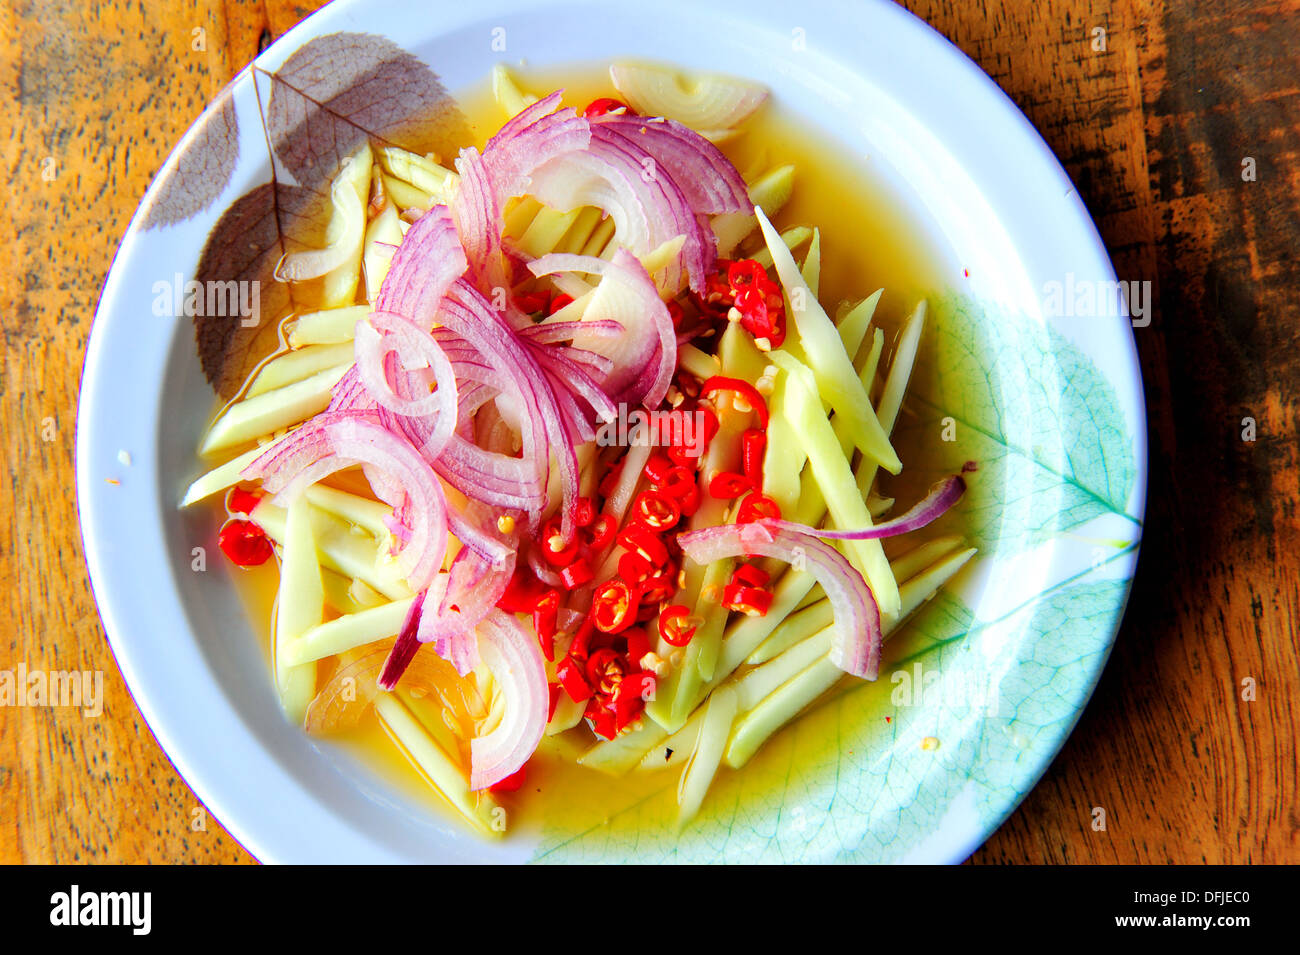 Geschmack von Thailand - Thai Gewürz Gericht - Zwiebel, Chili, unausgereifte Mangopflaume Stockfoto